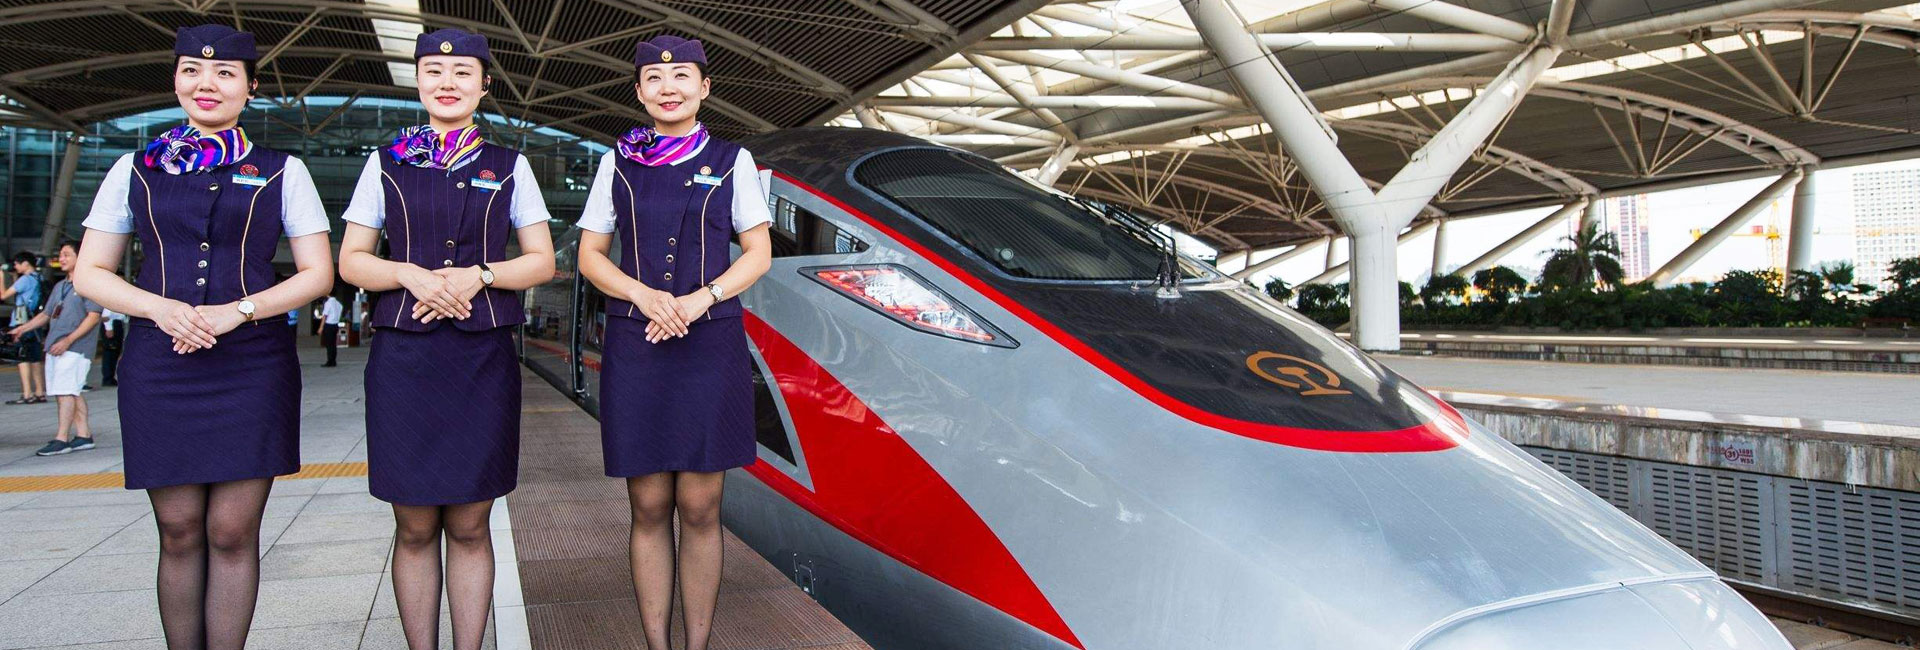 5 Days Hong Kong Shanghai Tour by High Speed Train